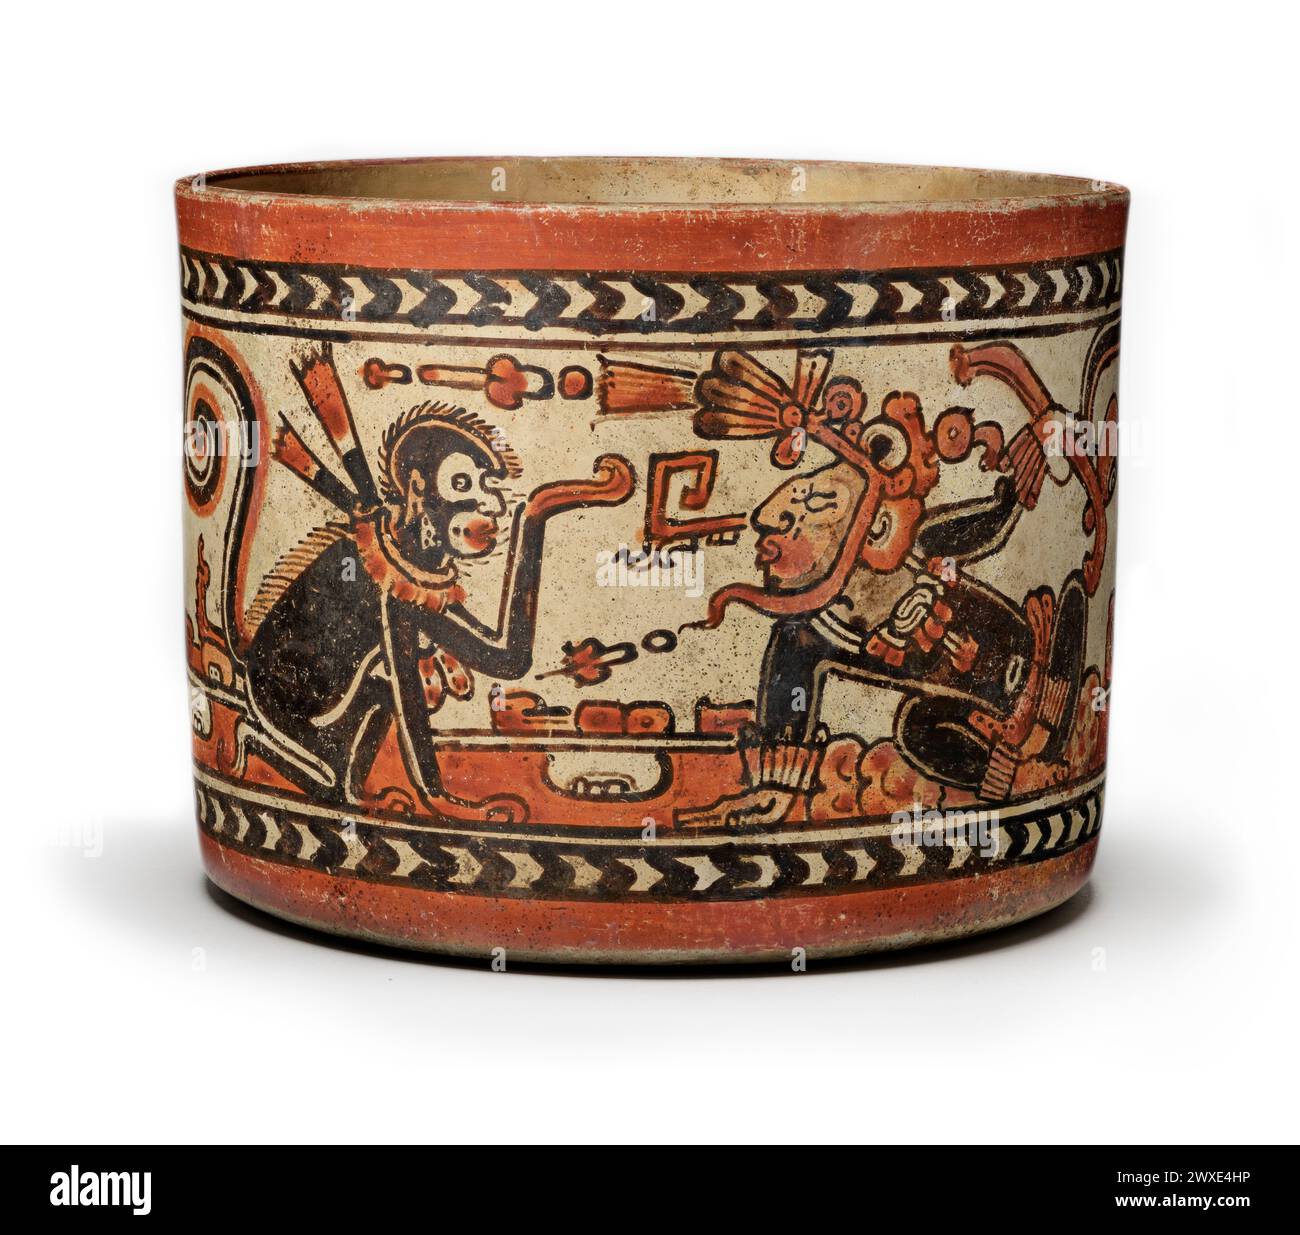 Navire polychrome du monde maya - Mexique / Guatemala. Représentant le jeune Seigneur et le singe. Maya, 600-800 ce céramique peinte par glissement. 14,6 cm de haut. Les récipients en céramique élégamment peints constituaient la première forme d'expression artistique au cours de la période classique tardive (550-850 AD) de l'ancienne civilisation maya, et aucun n'était plus magnifiquement peint que ceux connus sous le nom de style codex. Banque D'Images